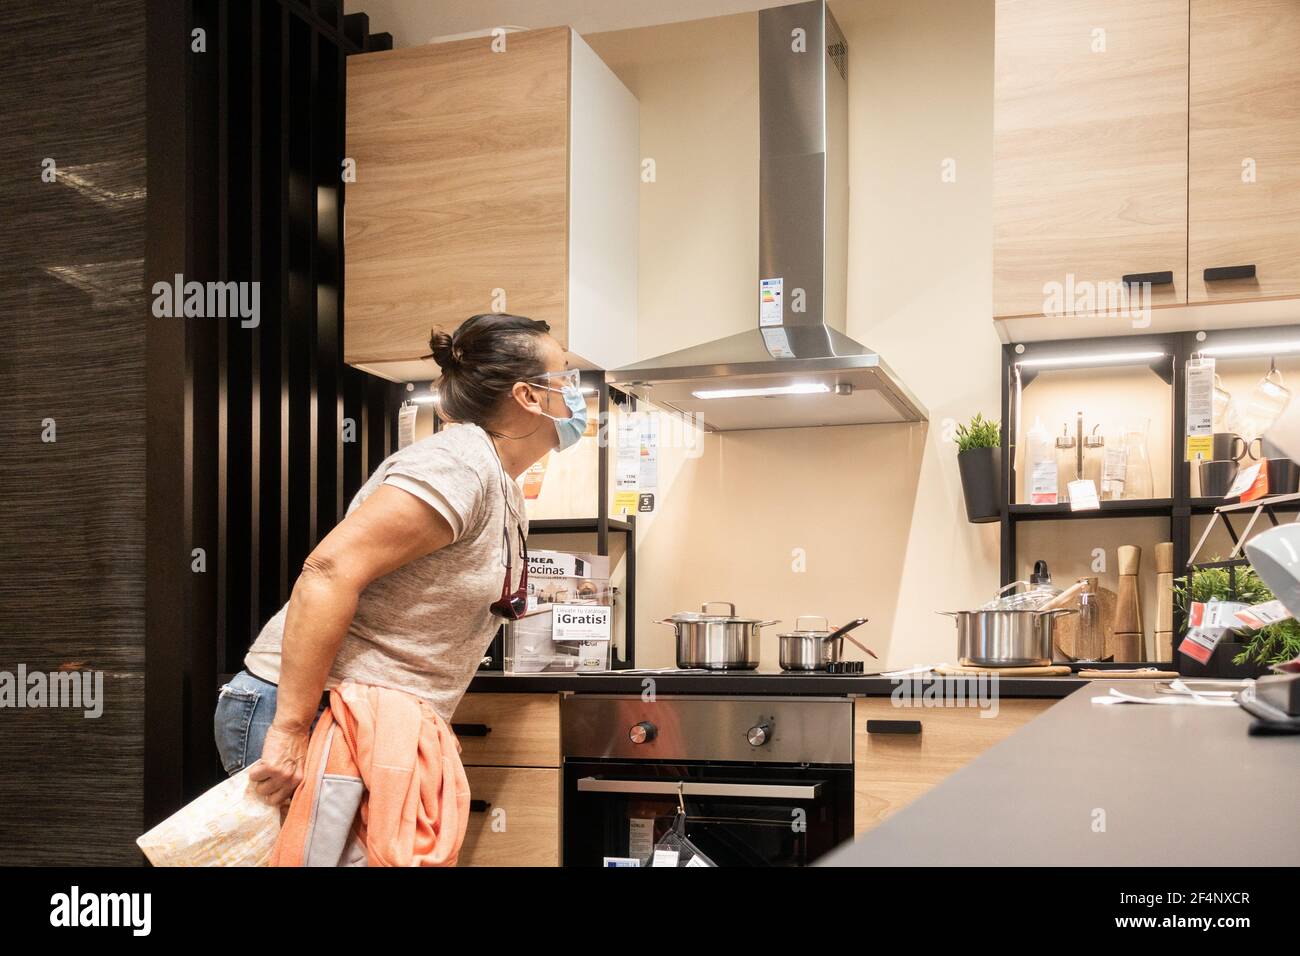 Femme portant le visage couvrant les achats pour la nouvelle cuisine dans le magasin Ikea en Espagne pendant Covid, pandémie de coronavirus. Banque D'Images